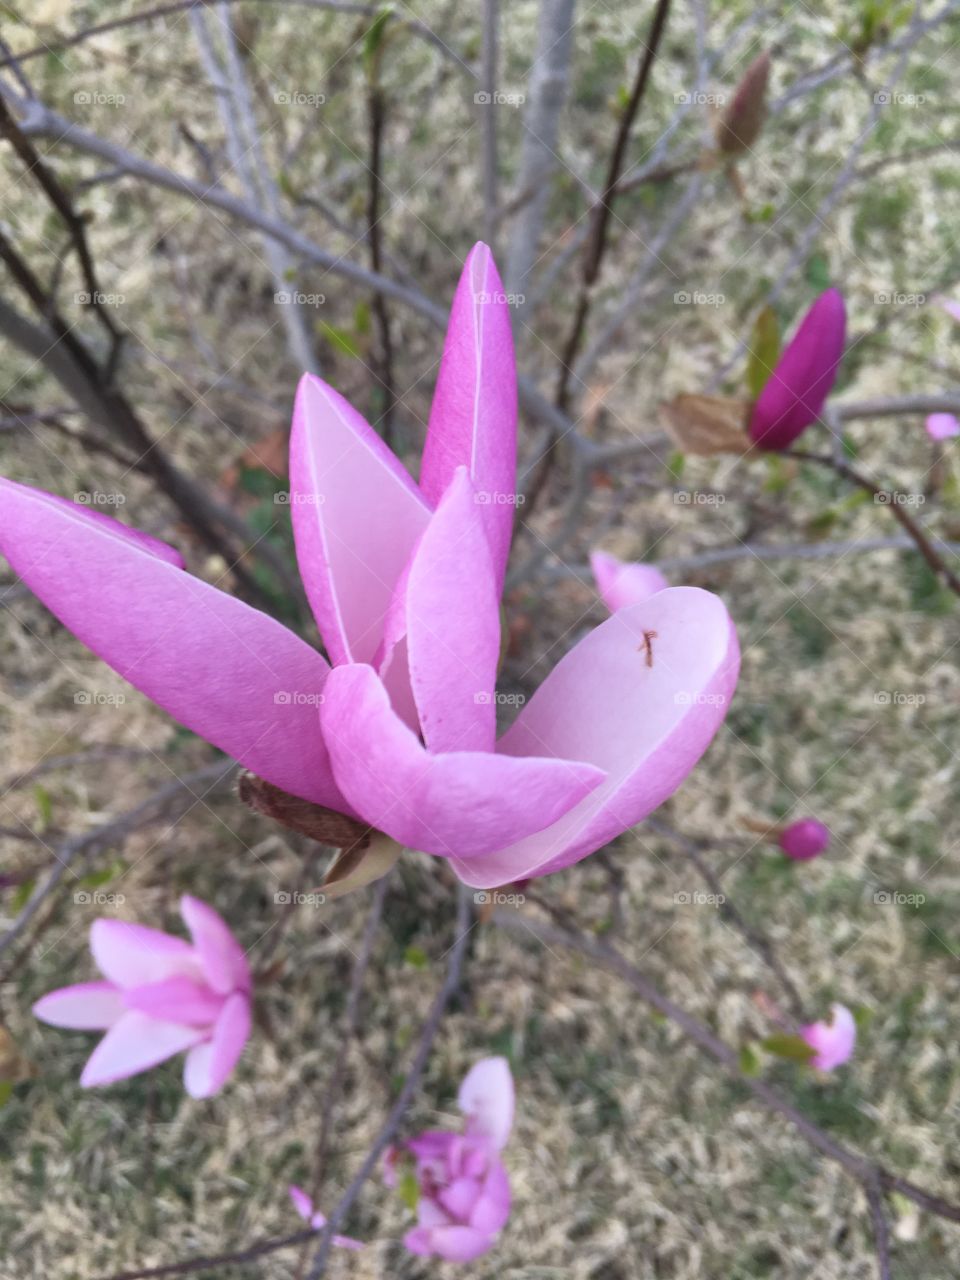 Purple Magnolia blooms.